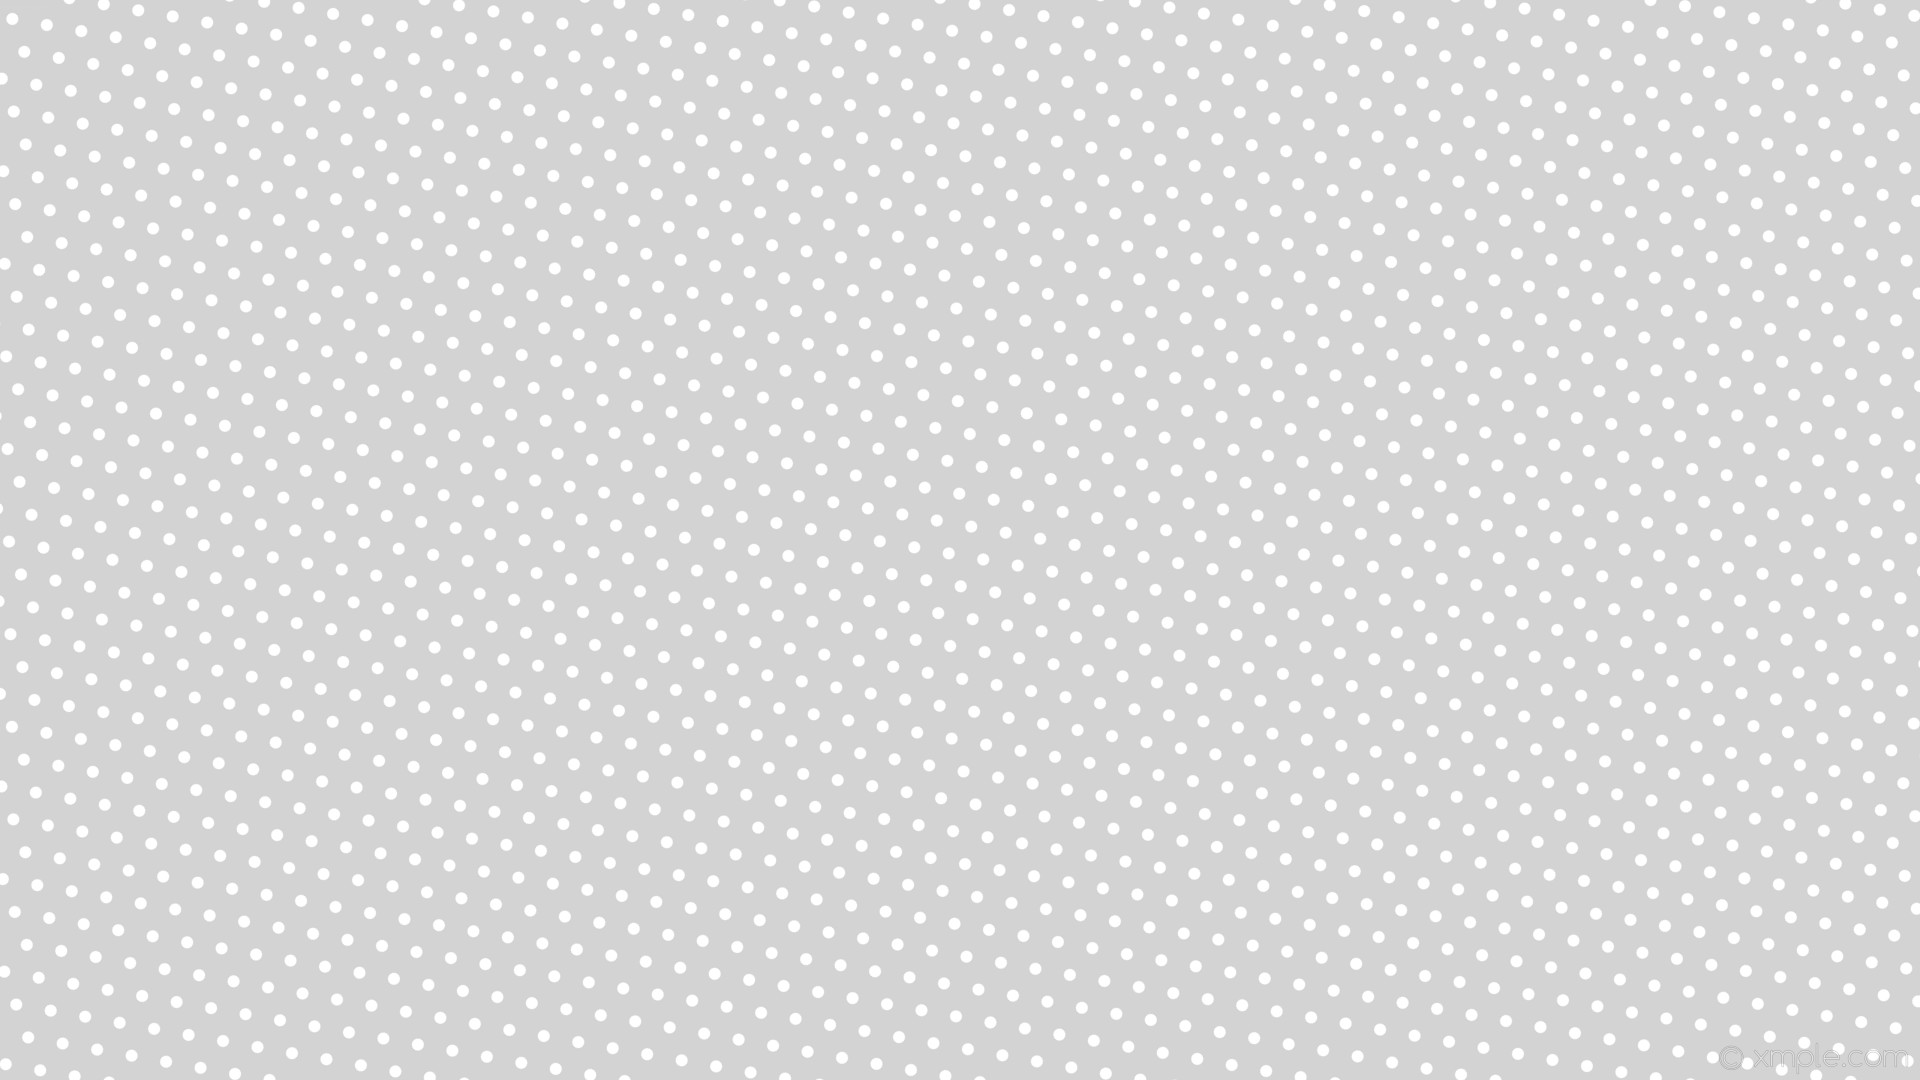 1920x1080 wallpaper grey hexagon white polka dots light gray #d3d3d3 #ffffff diagonal  50Â° 12px